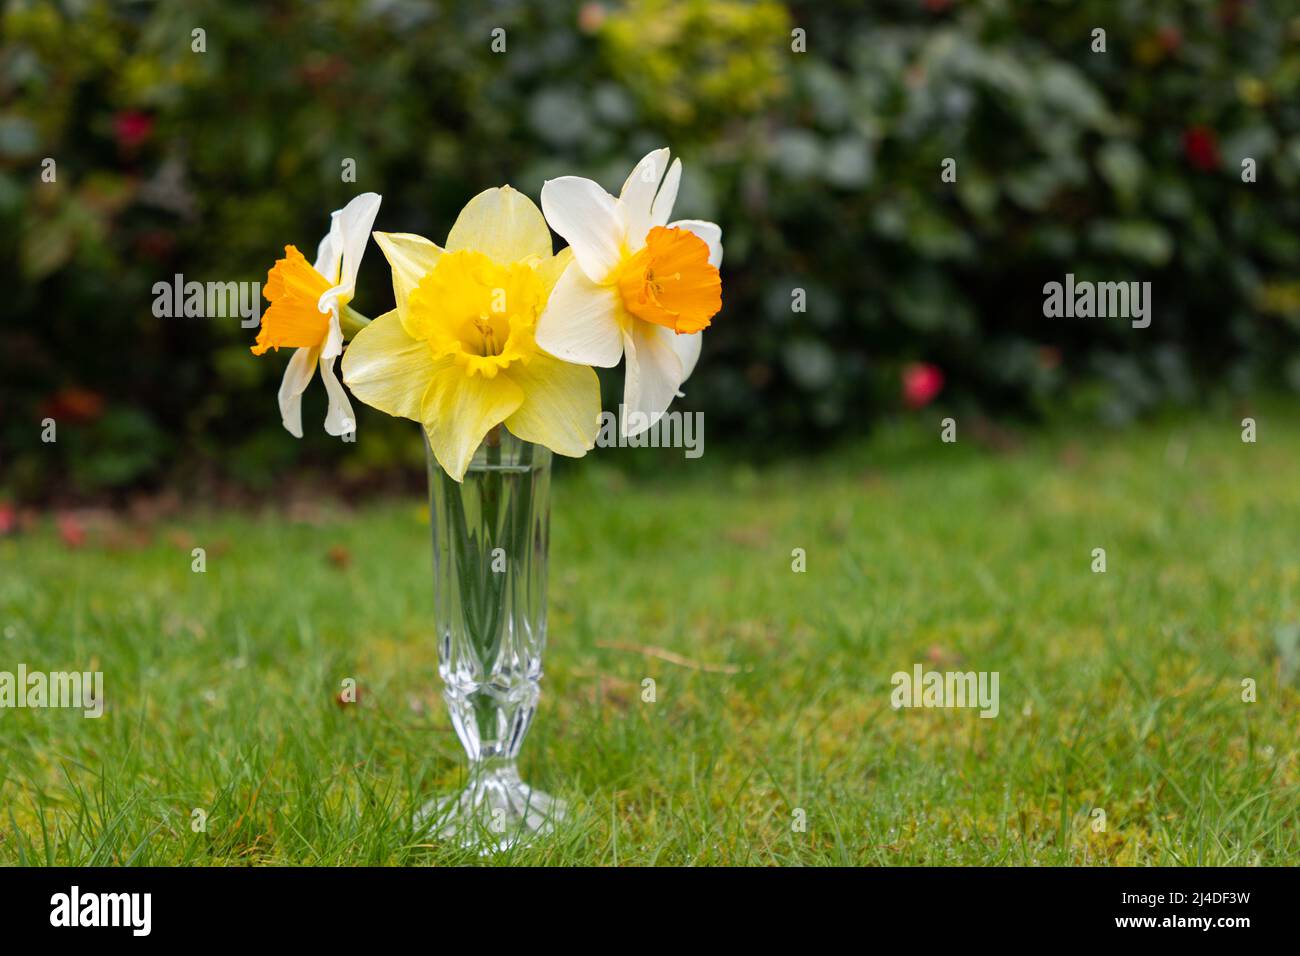 Jonquilles ou narcisse fleurs dans un vase en verre dans un cadre naturel Banque D'Images